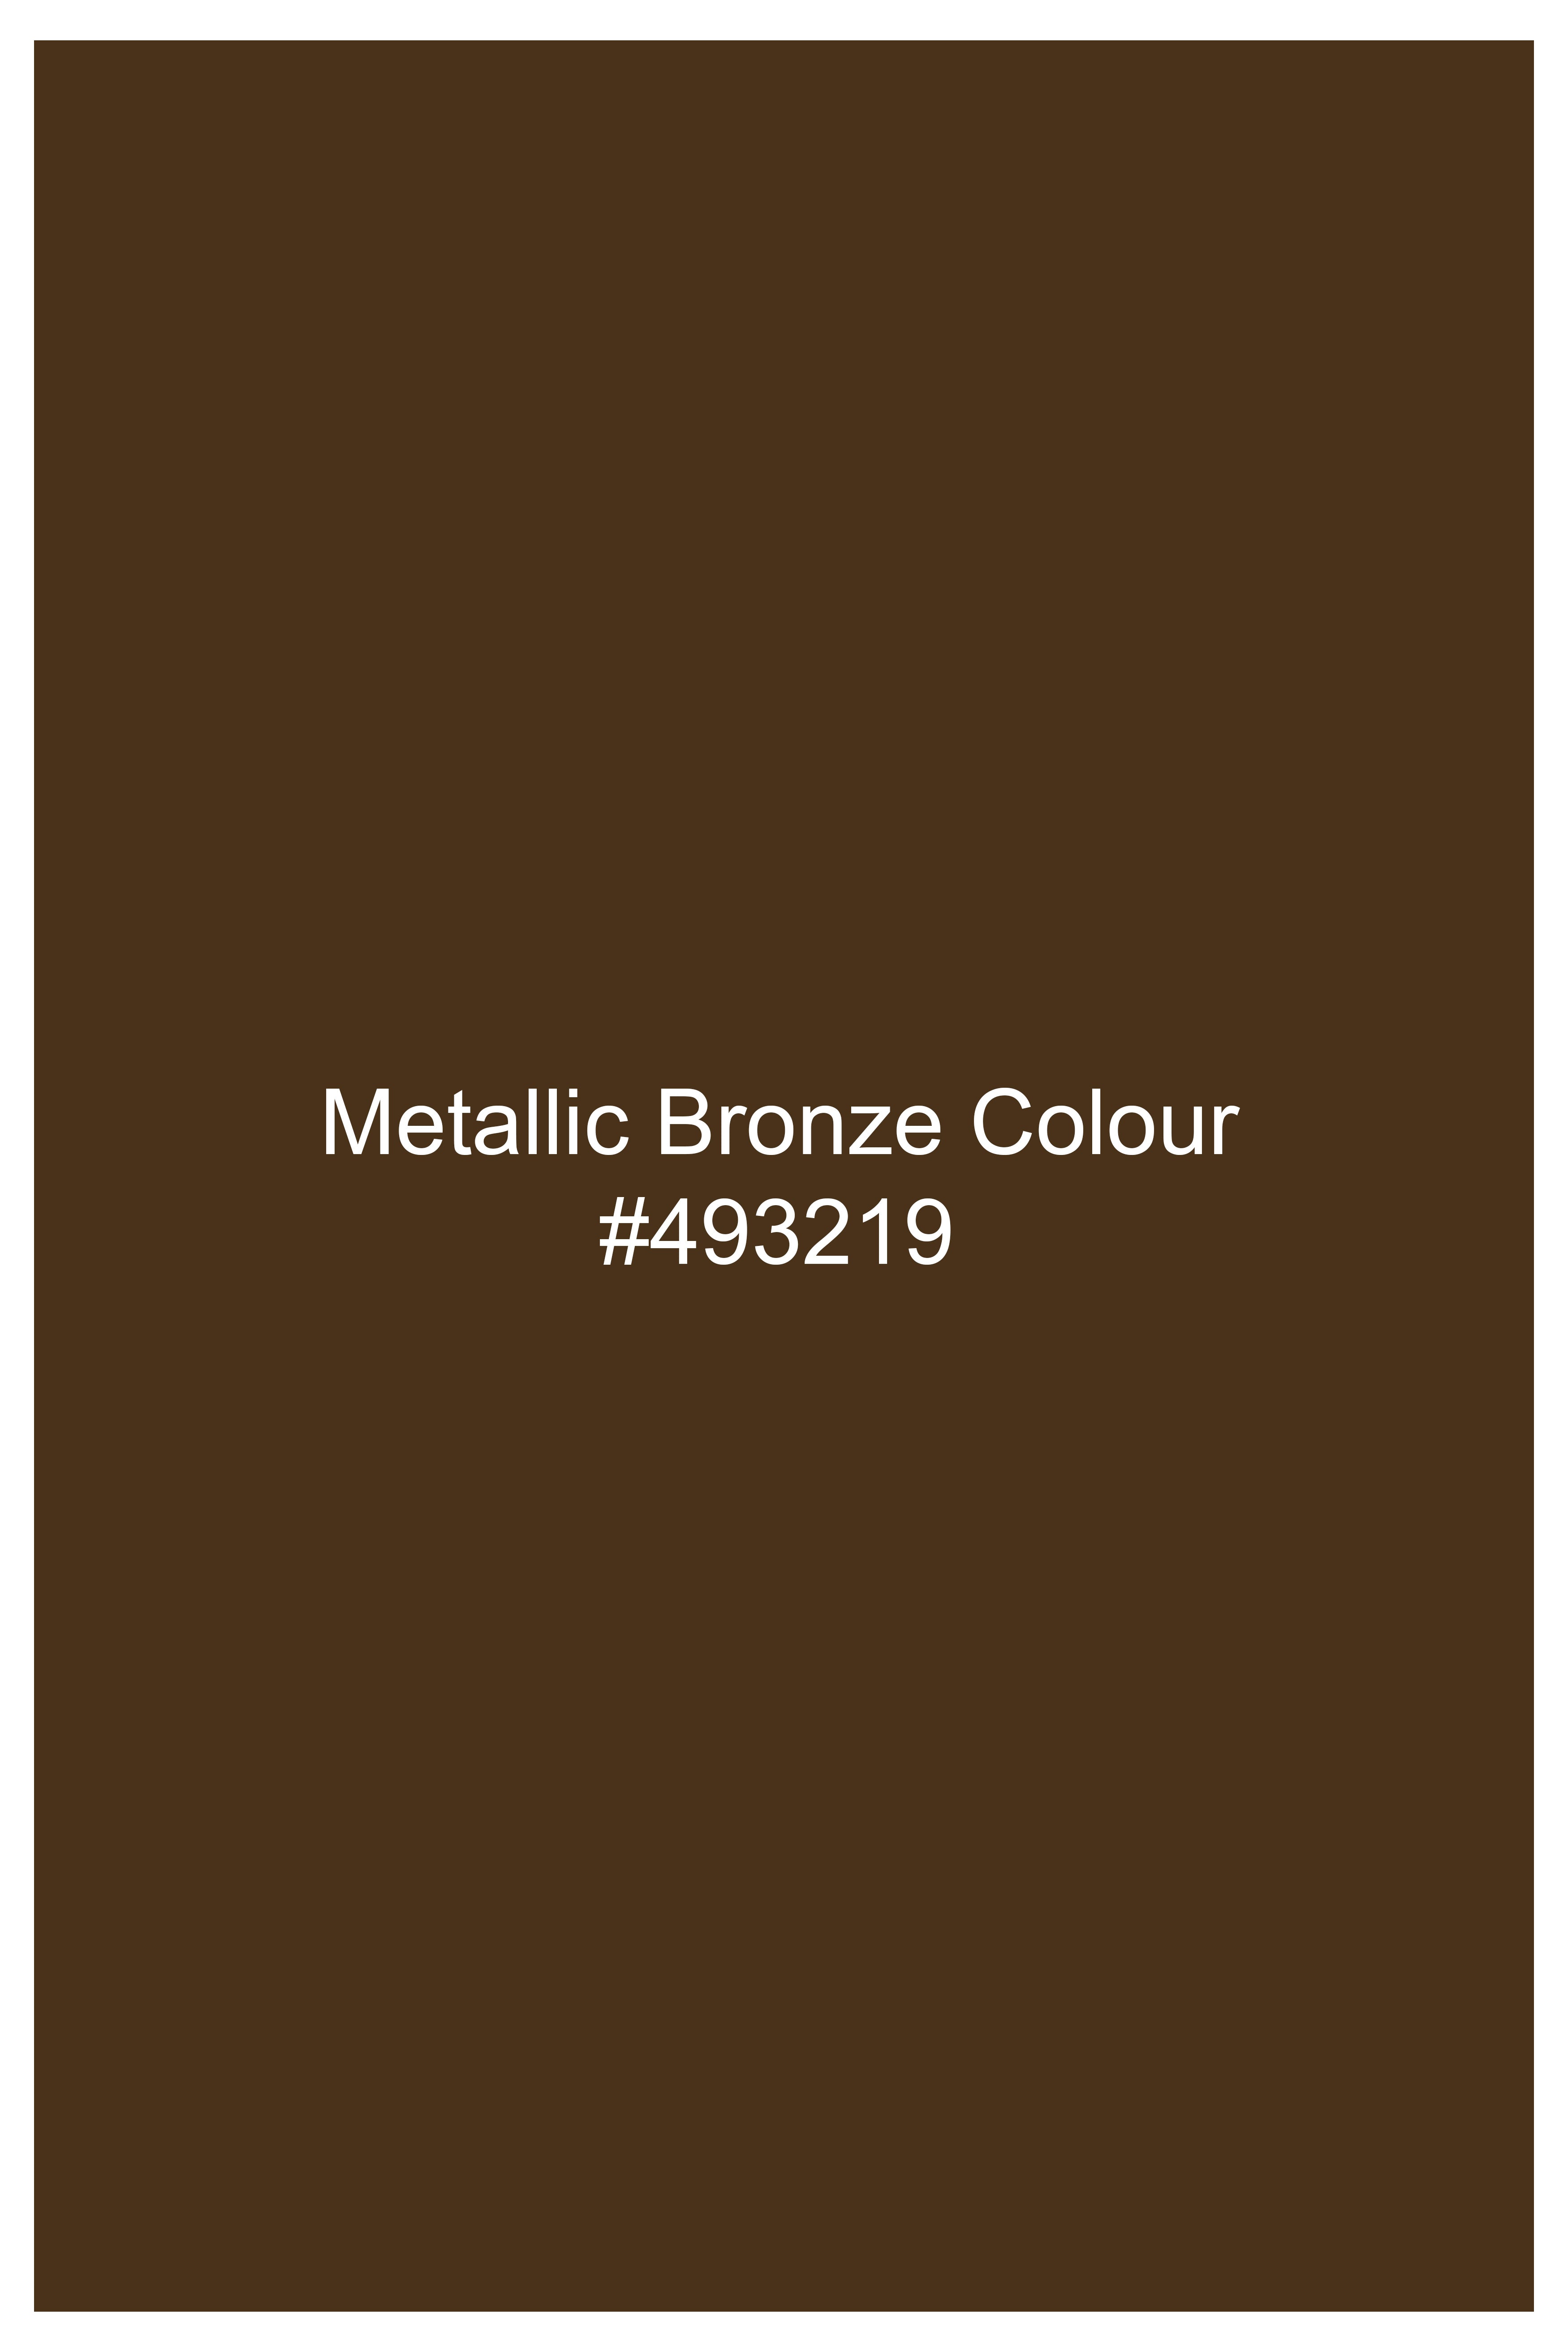 Metallic Bronze Brown Premium Cotton Stretchable Traveler Pant T2778-28, T2778-30, T2778-32, T2778-34, T2778-36, T2778-38, T2778-40, T2778-42, T2778-44